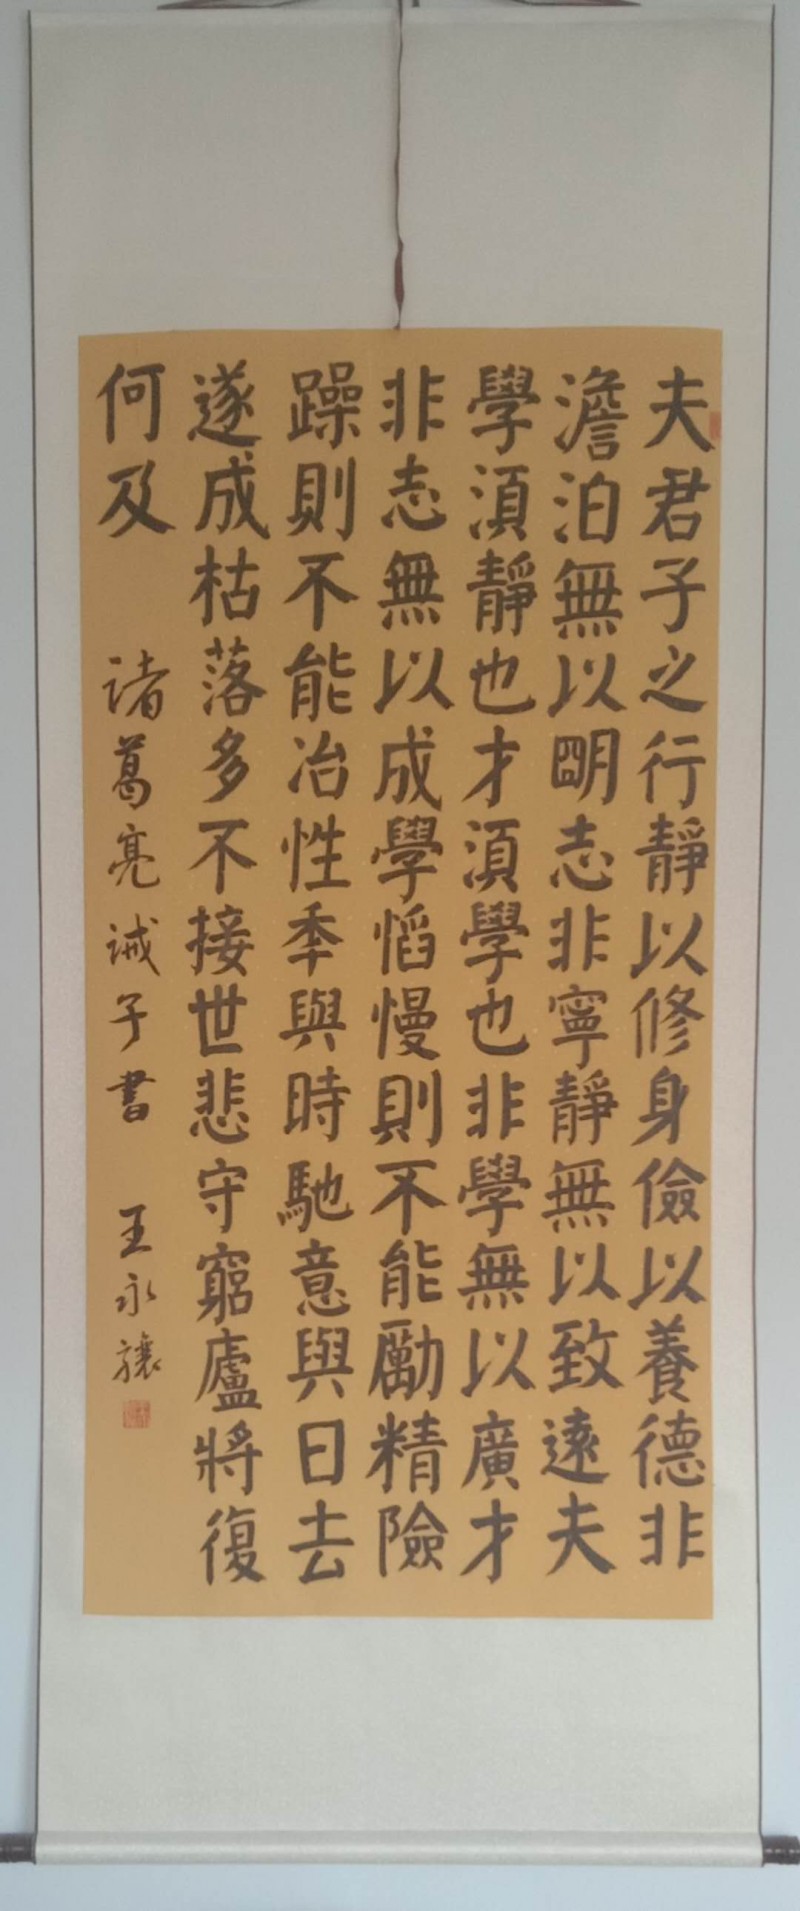 中国楹联学会中宣盛世文化艺术交流中心书画风采展示——王永骧